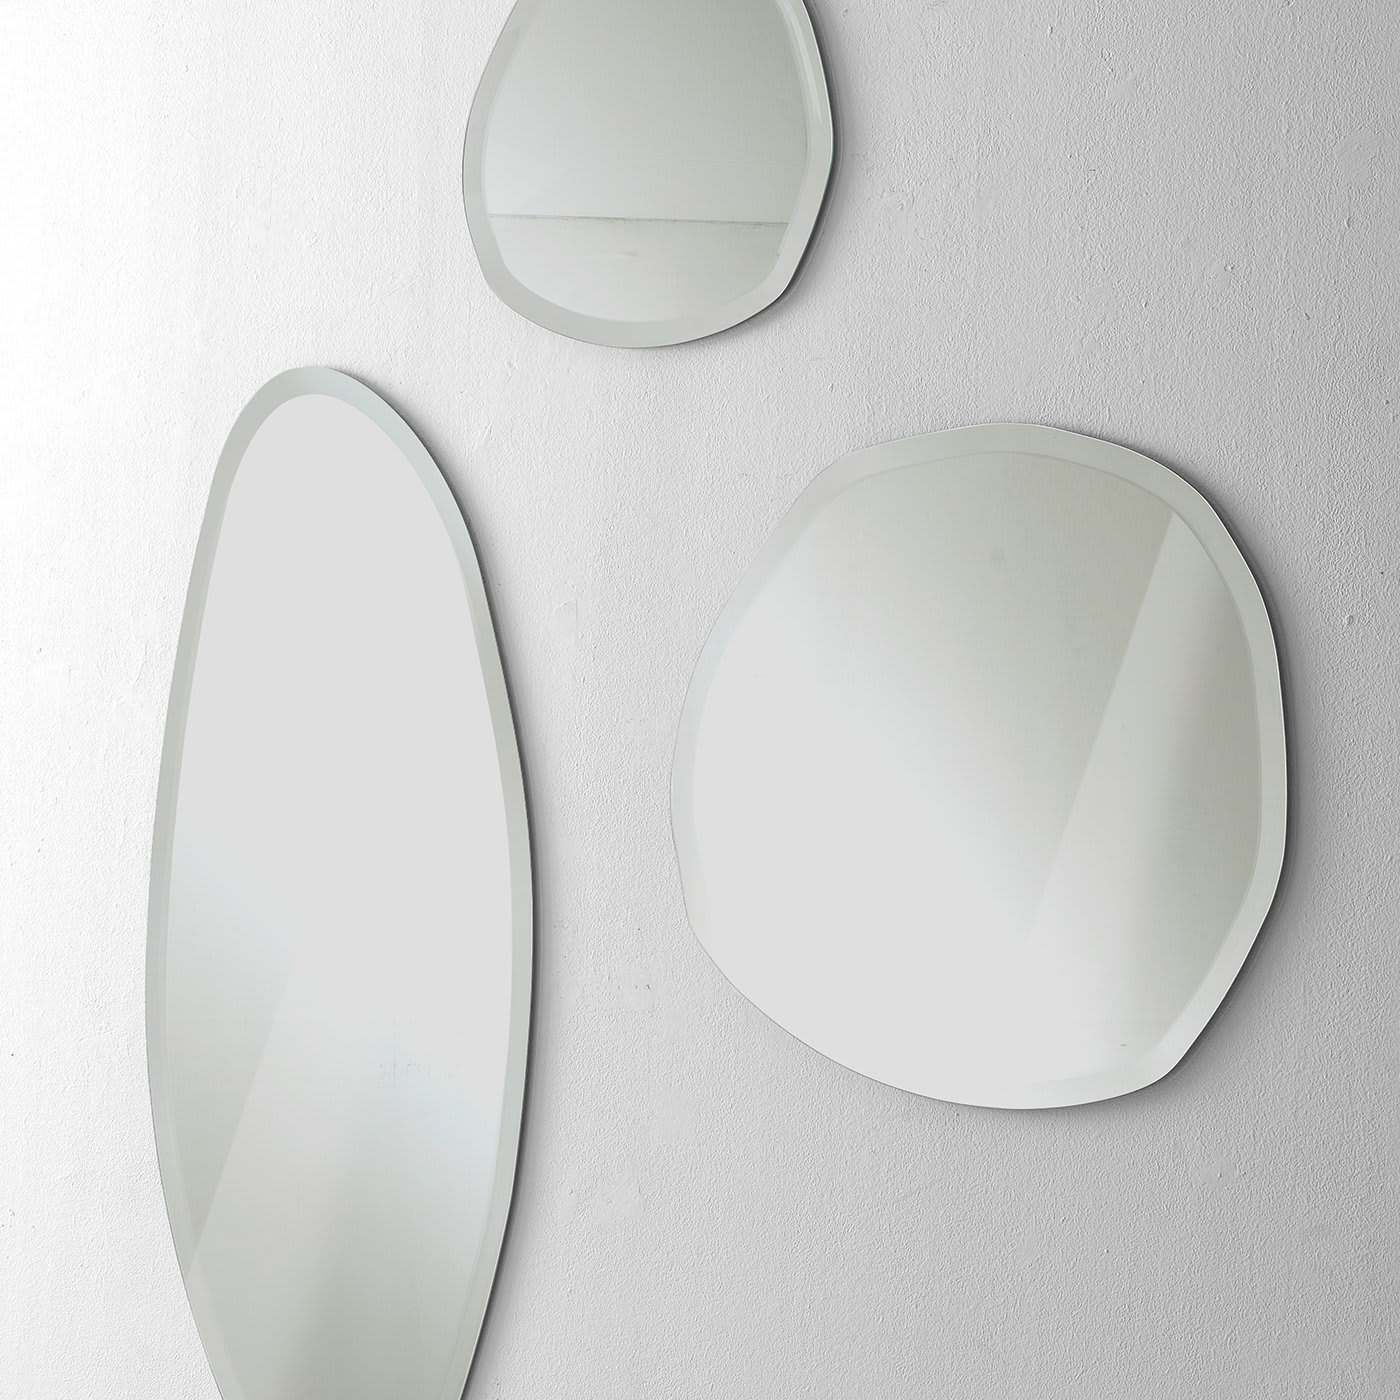 Stone Wall Mirror #3 by Norberto Delfinetti - Pacini & Cappellini